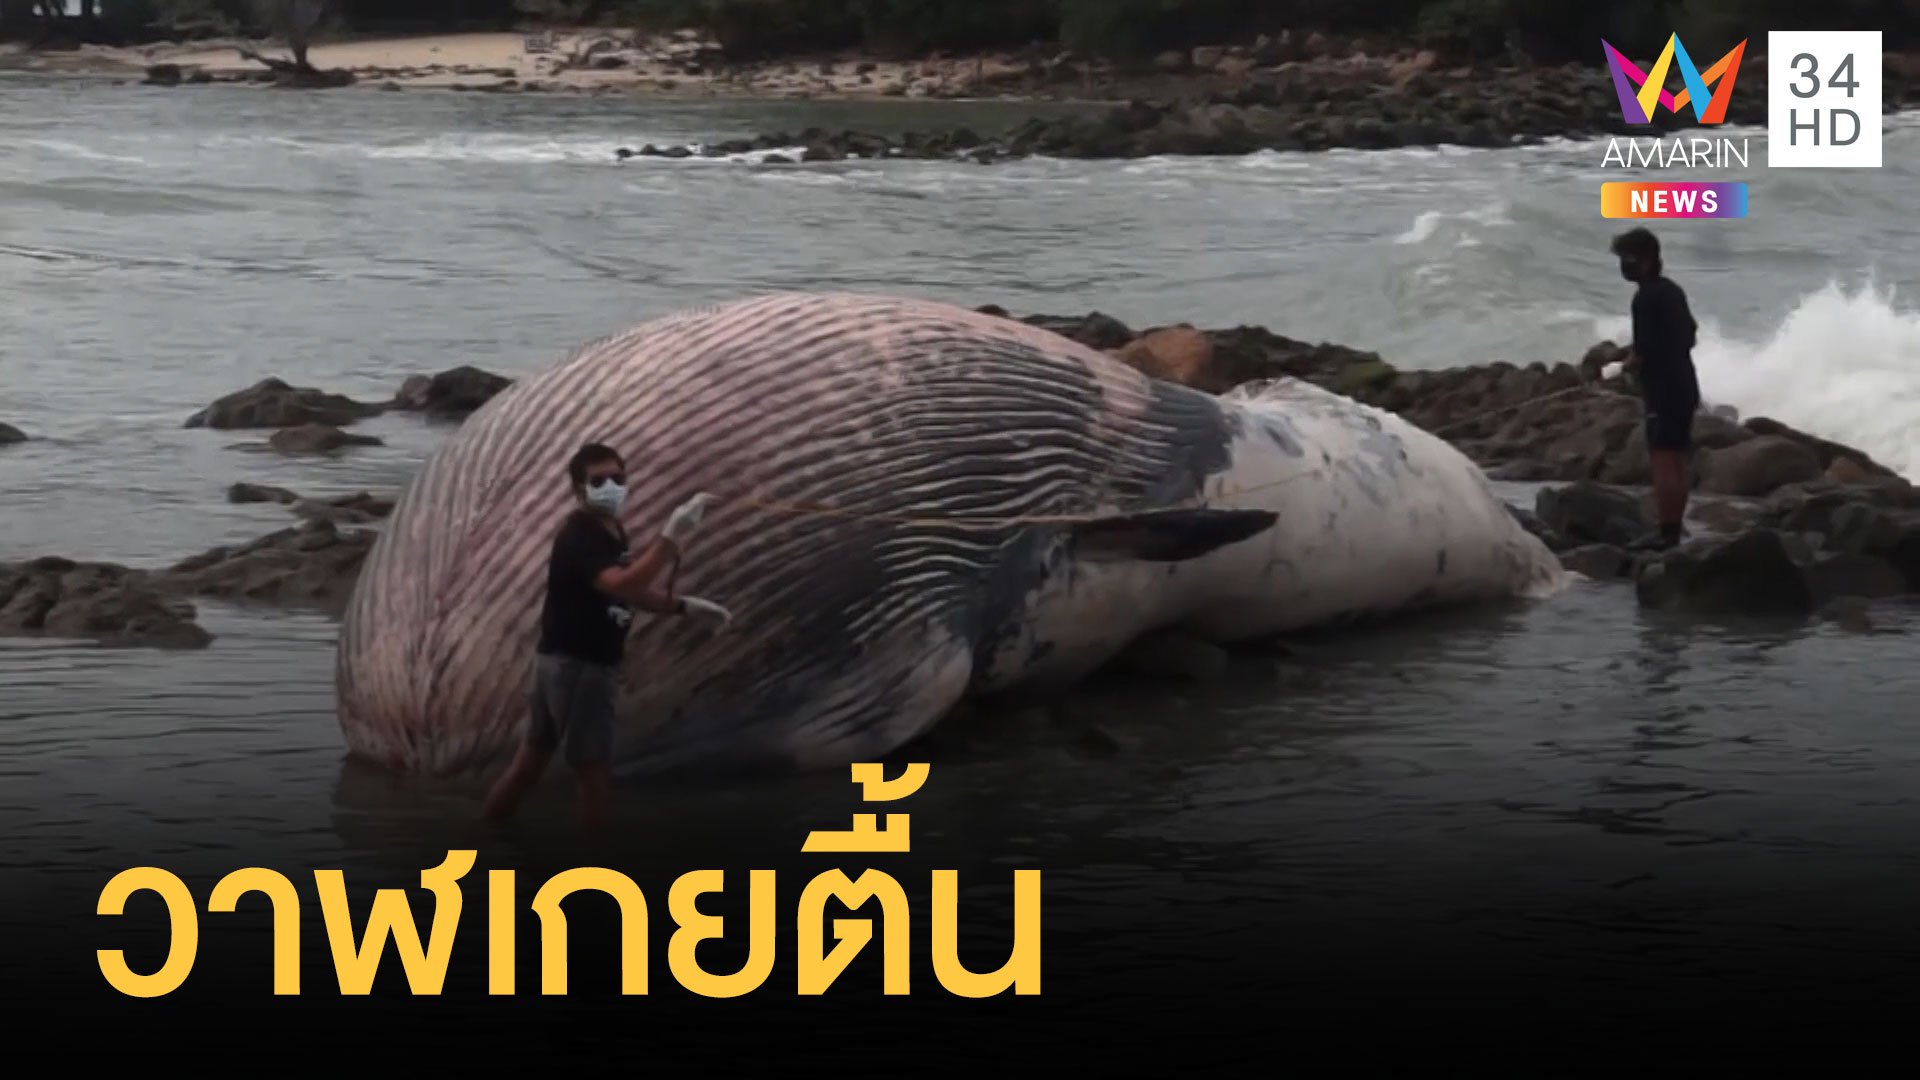 วาฬบรูด้าเกยตื้นหนัก 7 ตัน ถูกคลื่นซัดเกยหาดเกาะสมุย | ข่าวอรุณอมรินทร์ | 11 ม.ค. 64 | AMARIN TVHD34